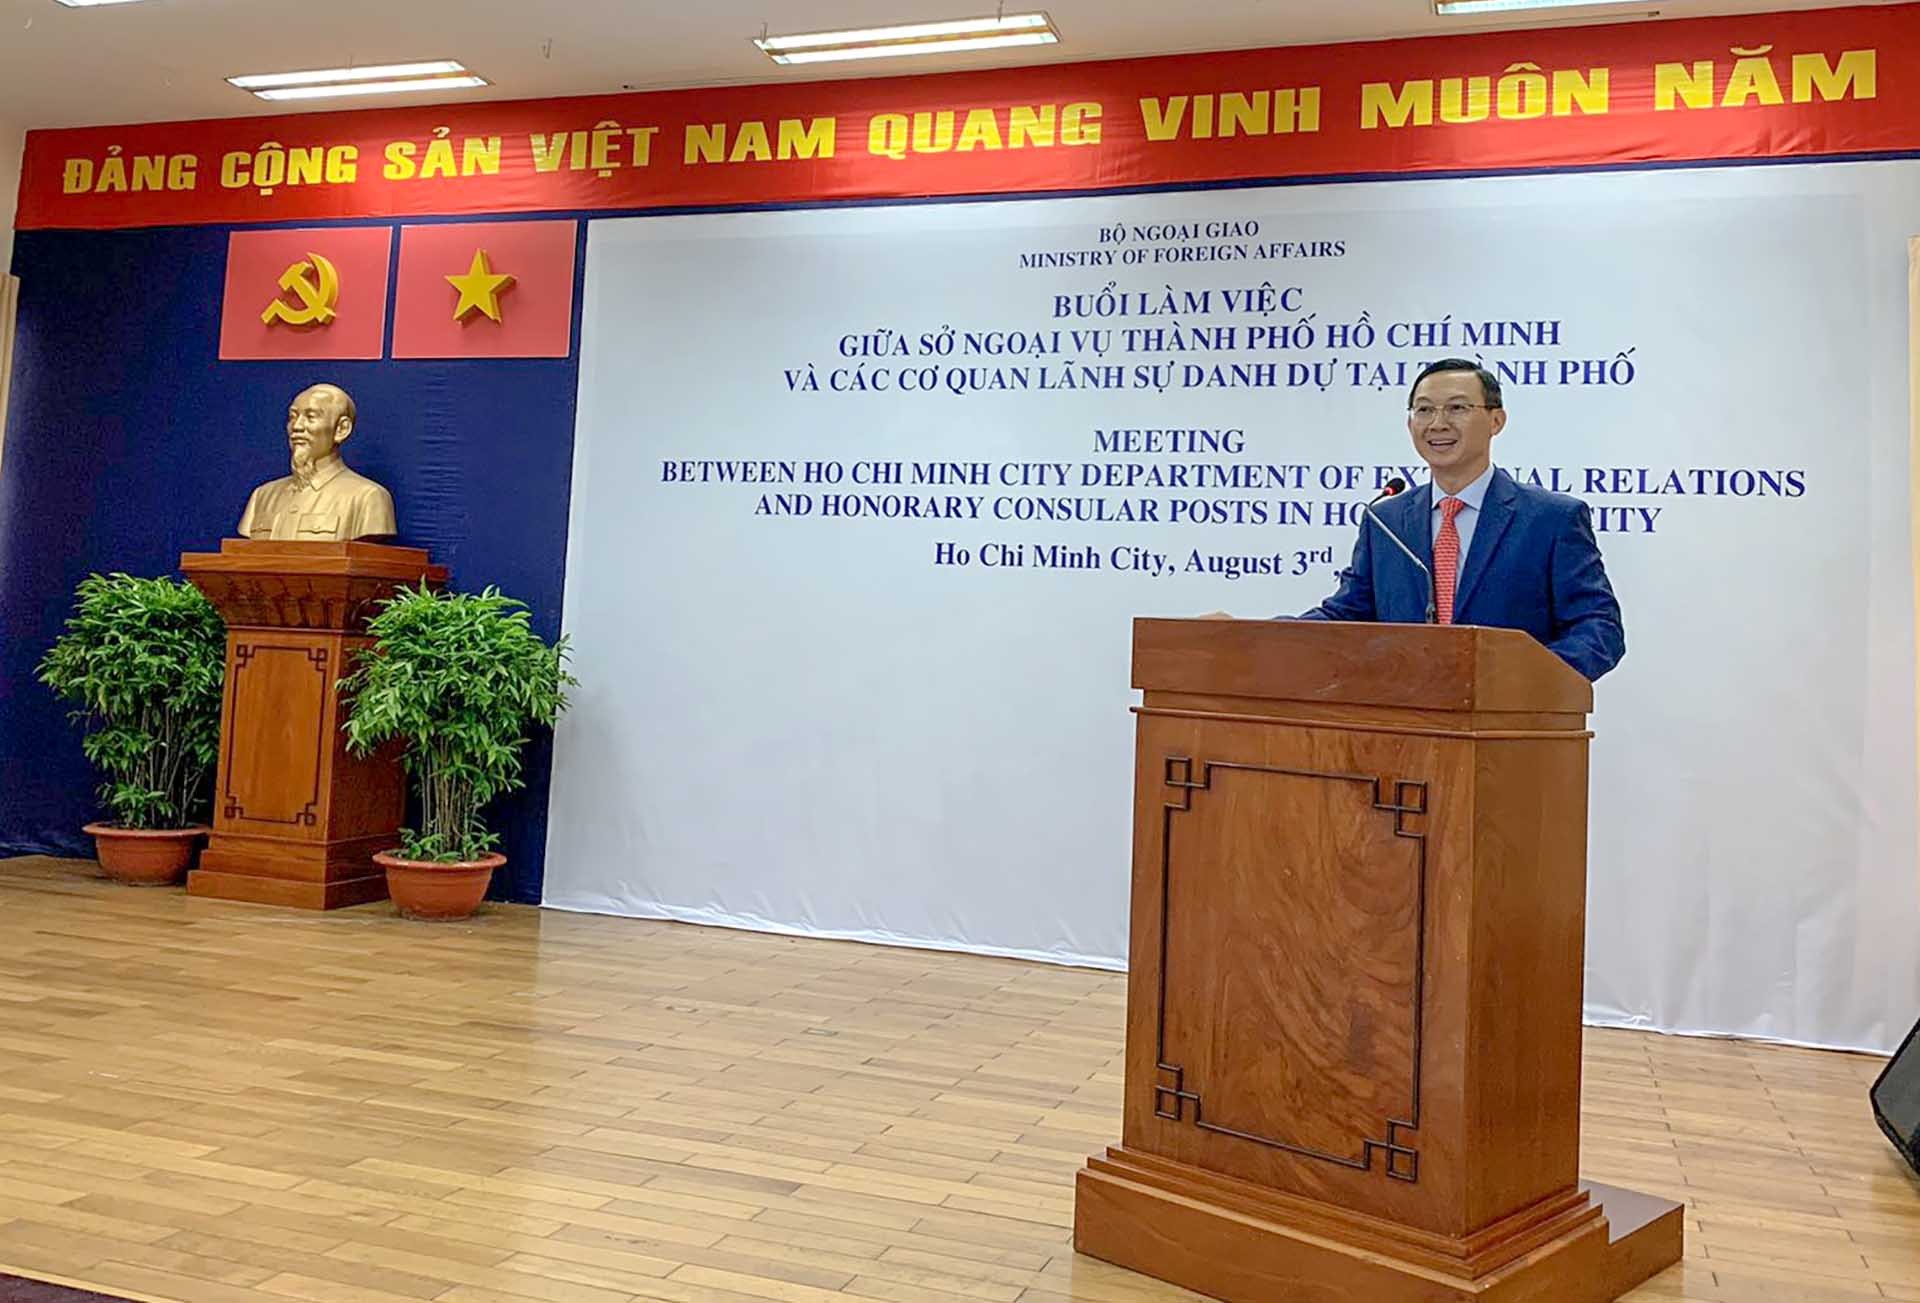 Ông Trần Phước Anh, Giám đốc Sở Ngoại vụ TP. Hồ Chí Minh phát biểu